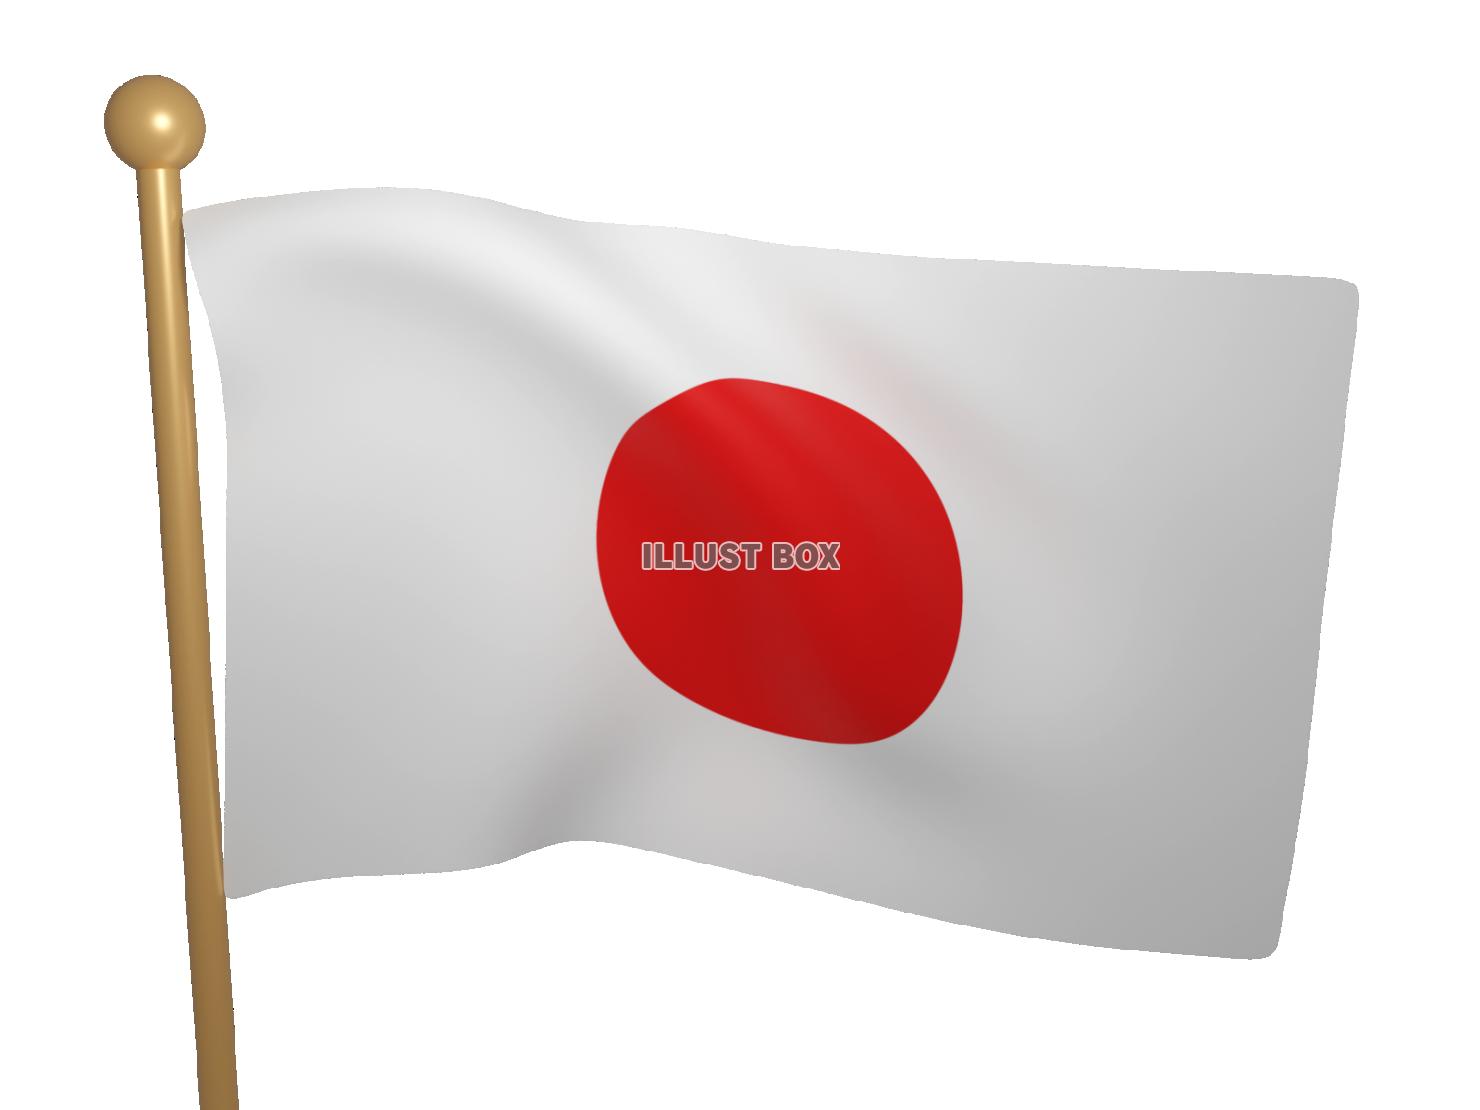 リアルになびく日本国旗の3DCG【透過PNG】